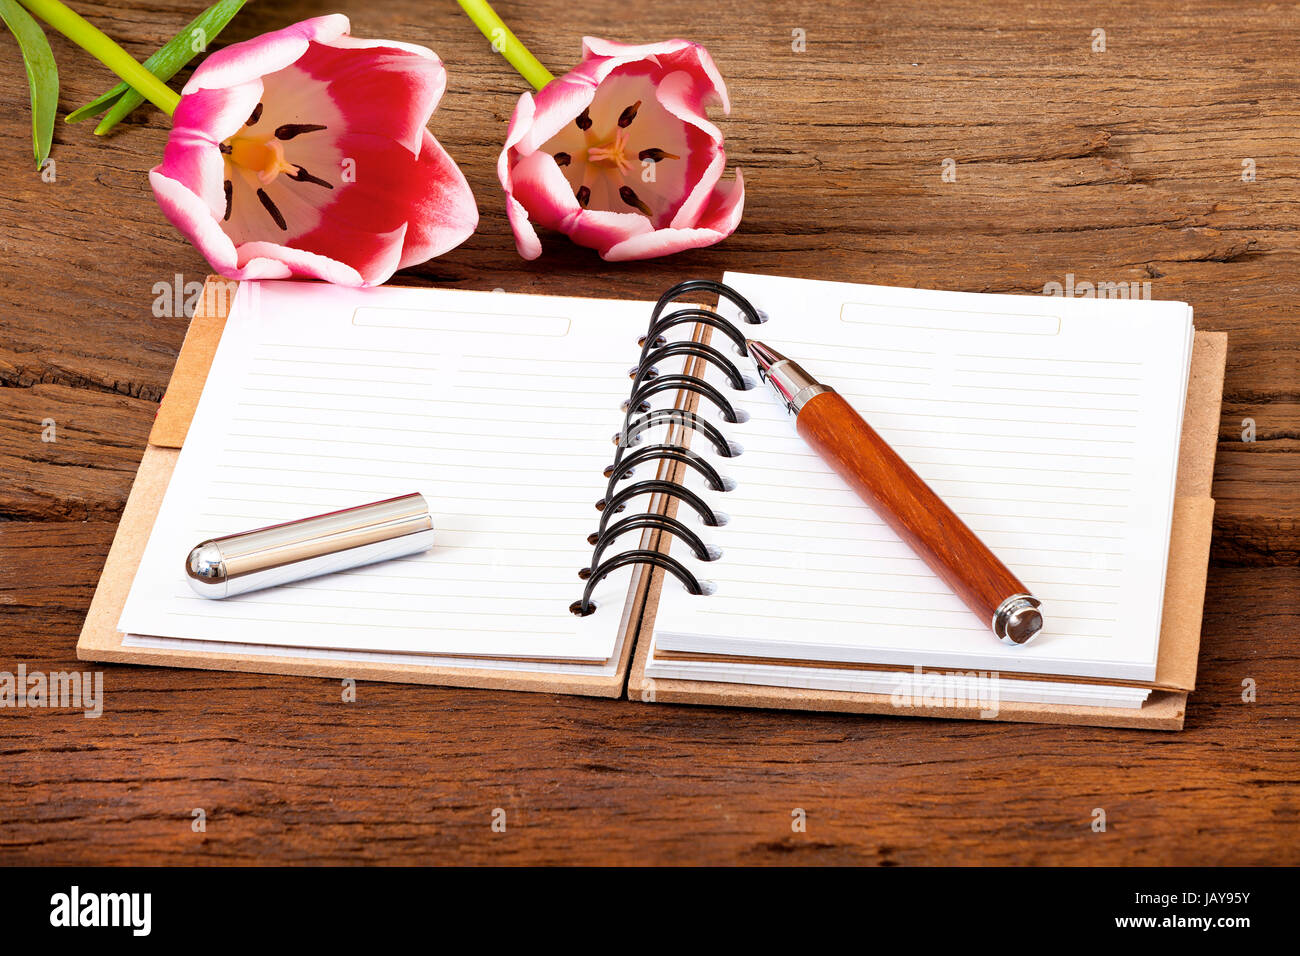 Notizbuch aufgeschlagen,ein Stift und zwei Tulpen liegen auf hölzernen Untergrund Stock Photo